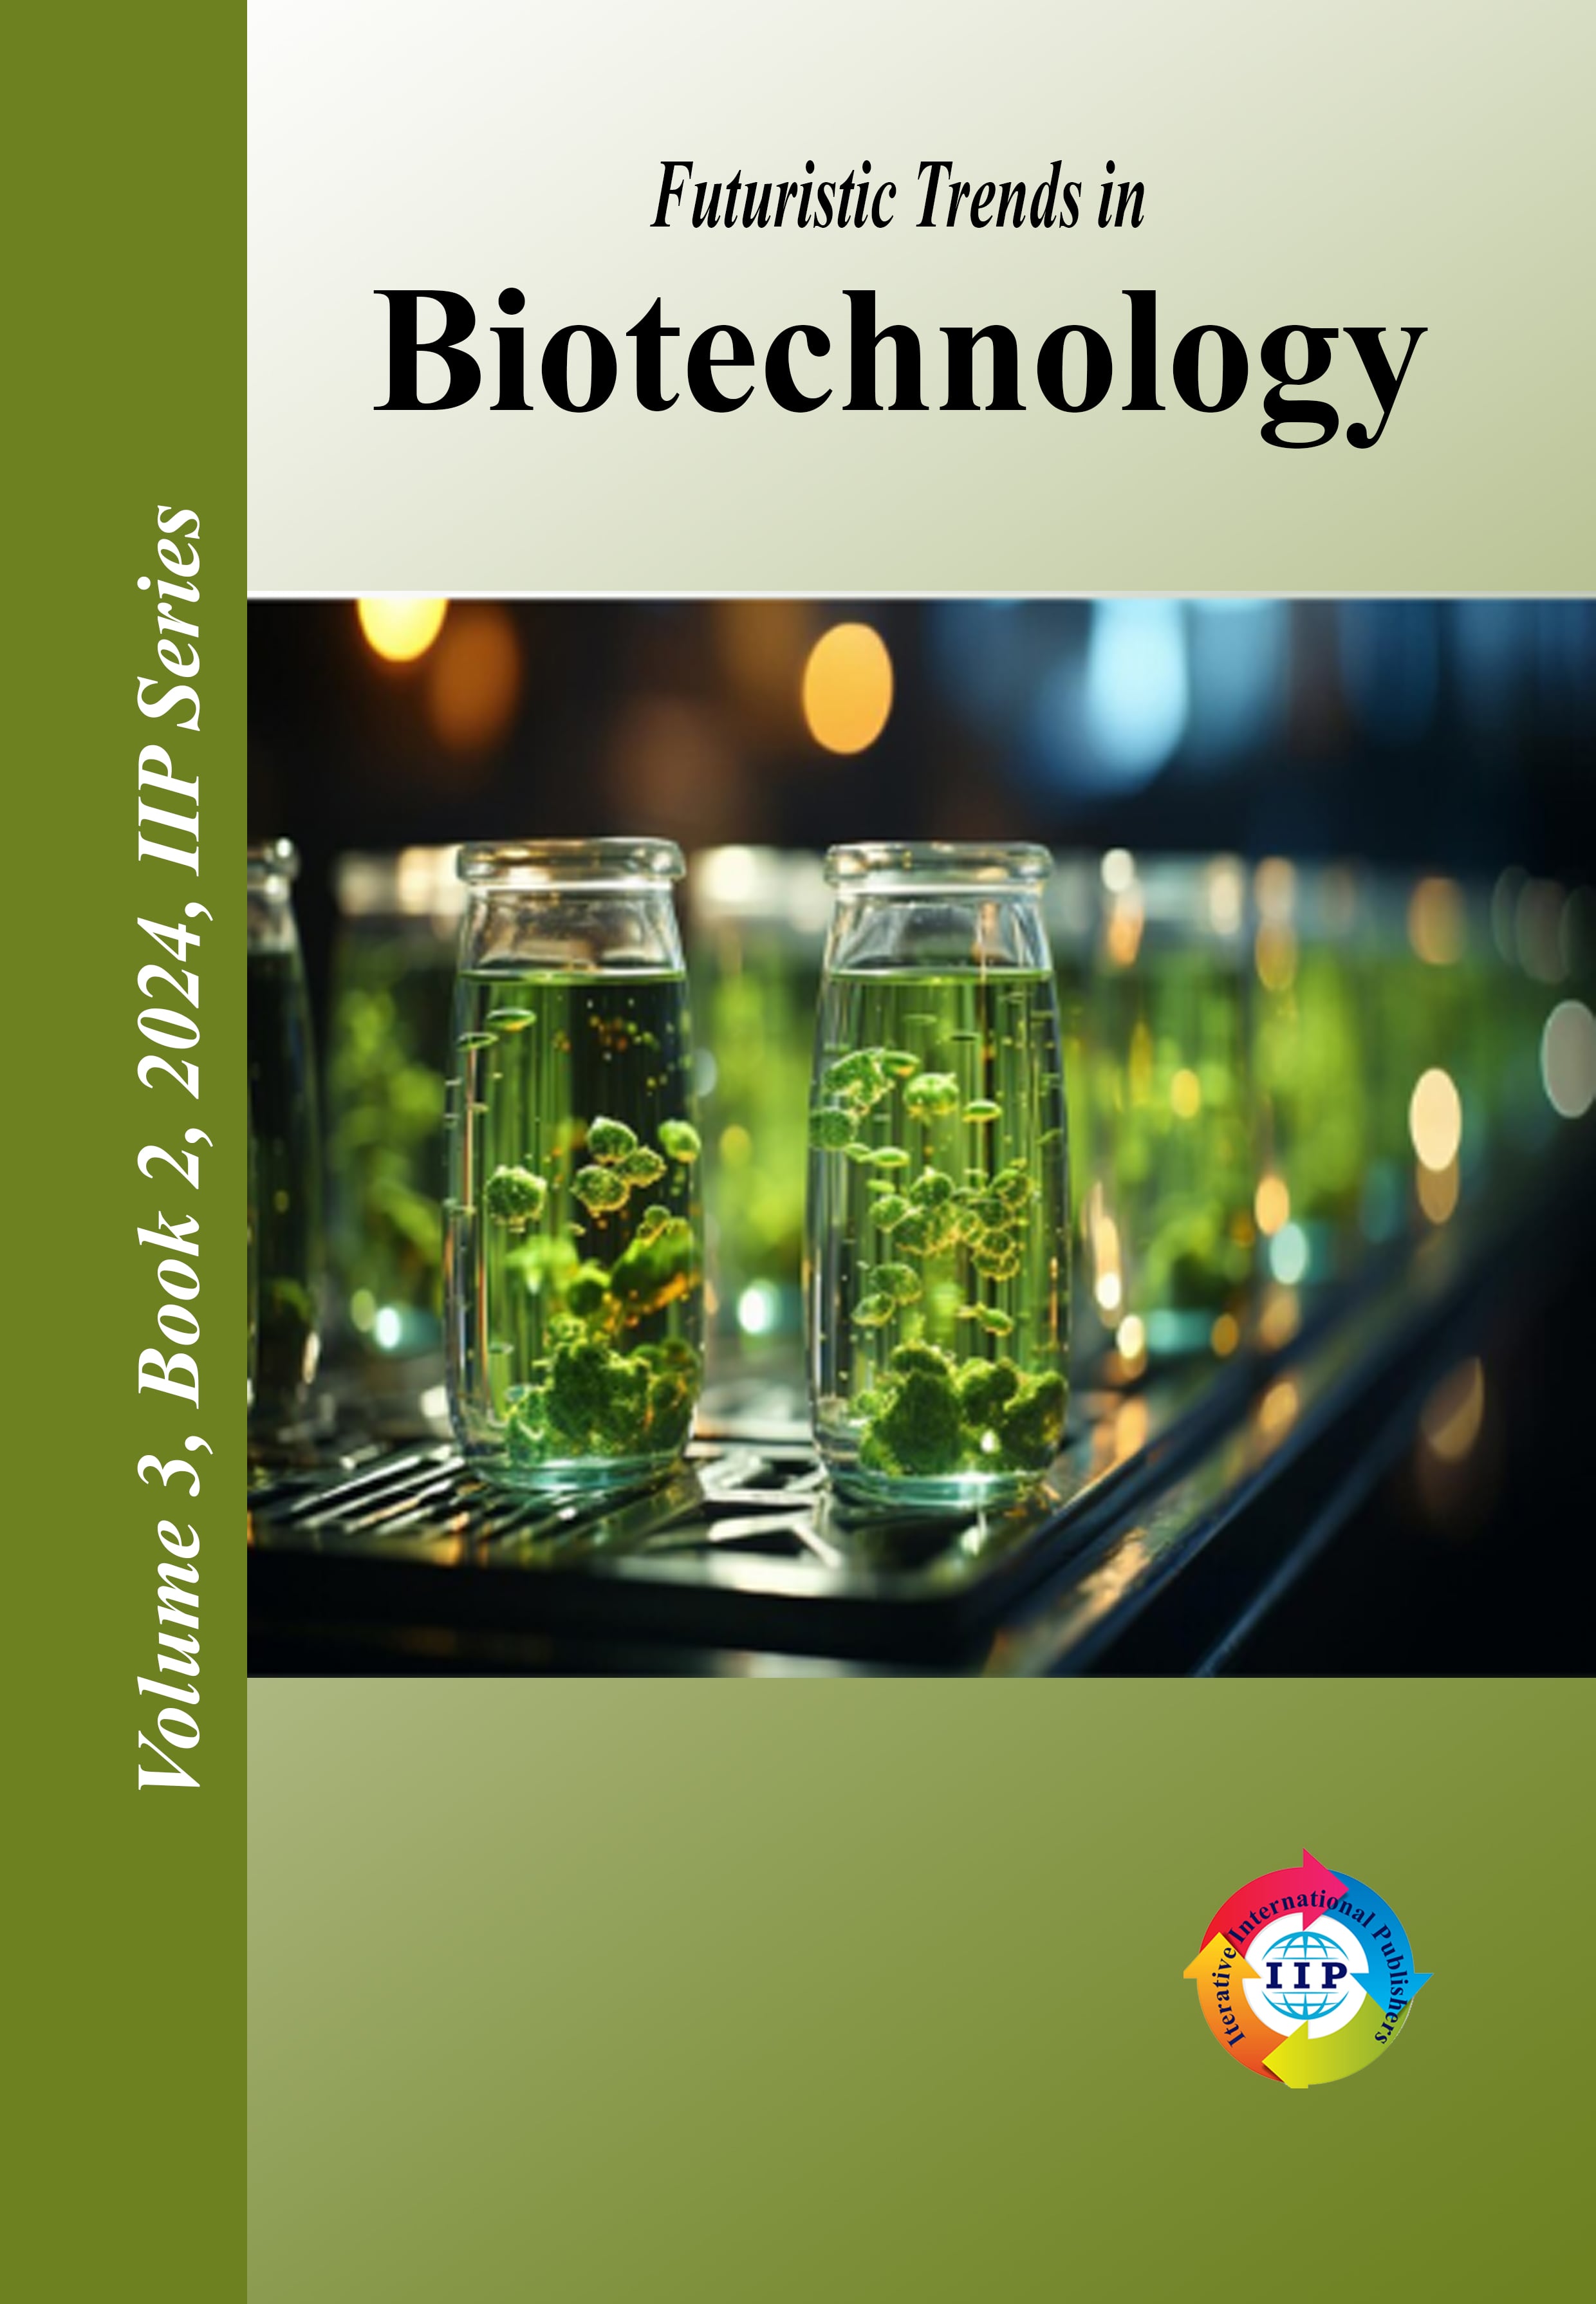 Futuristic Trends in Biotechnology Volume 3 Book 2